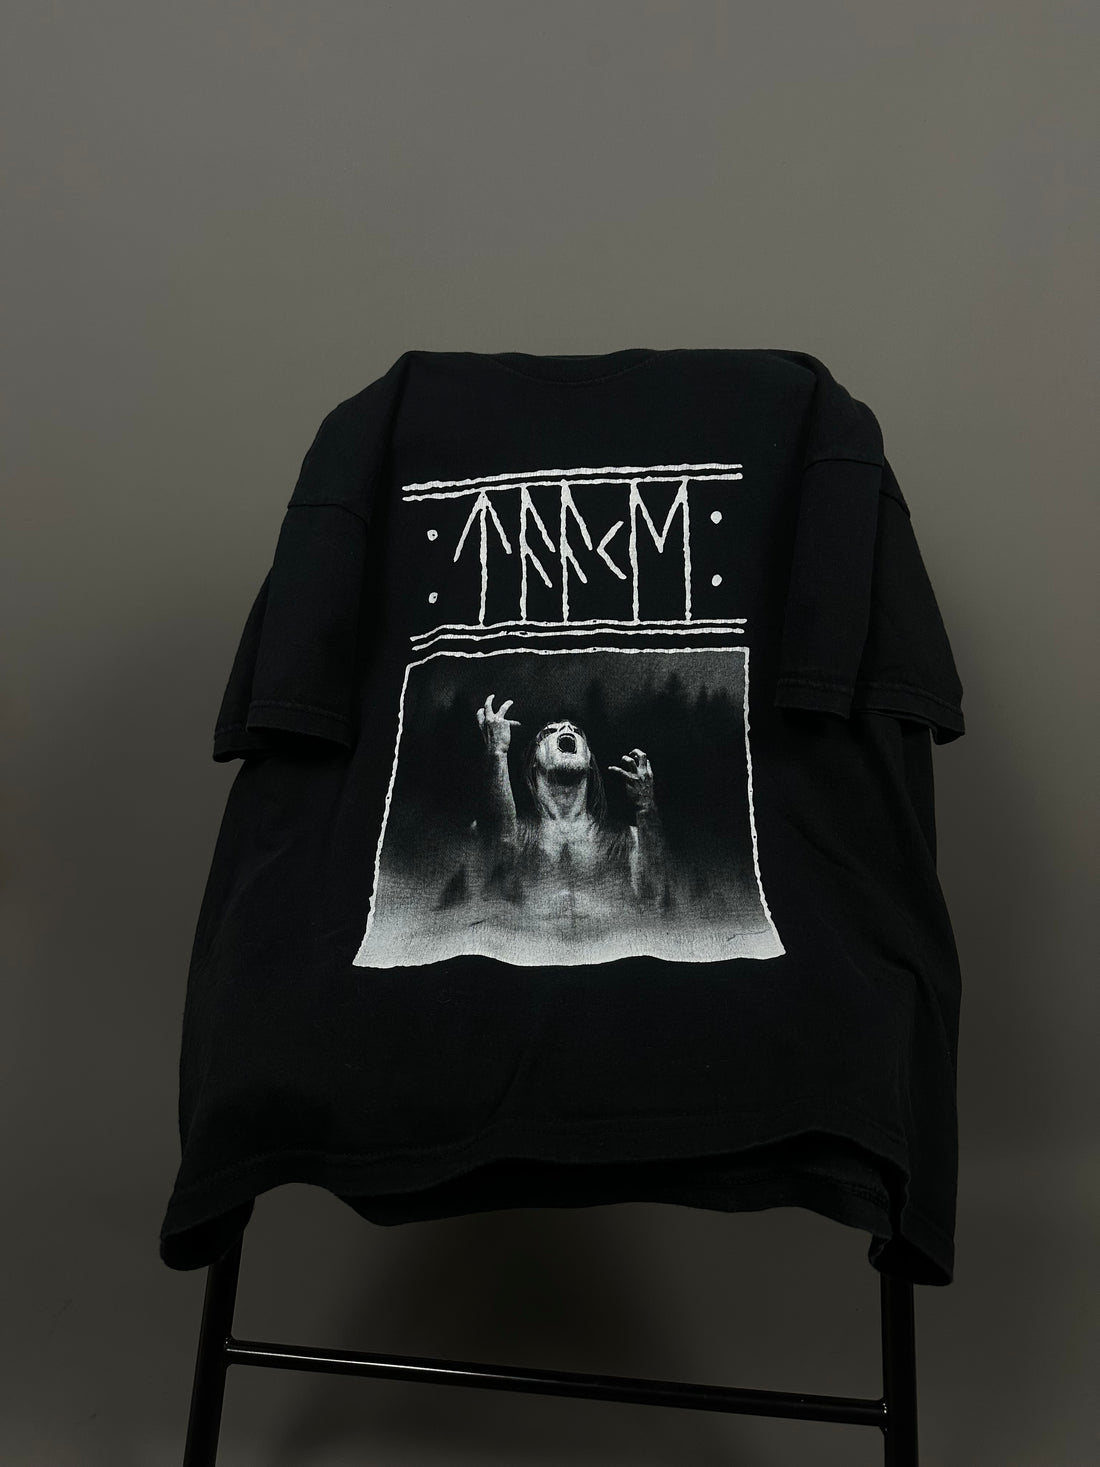 Taake 2009 Black Metal T-Shirt